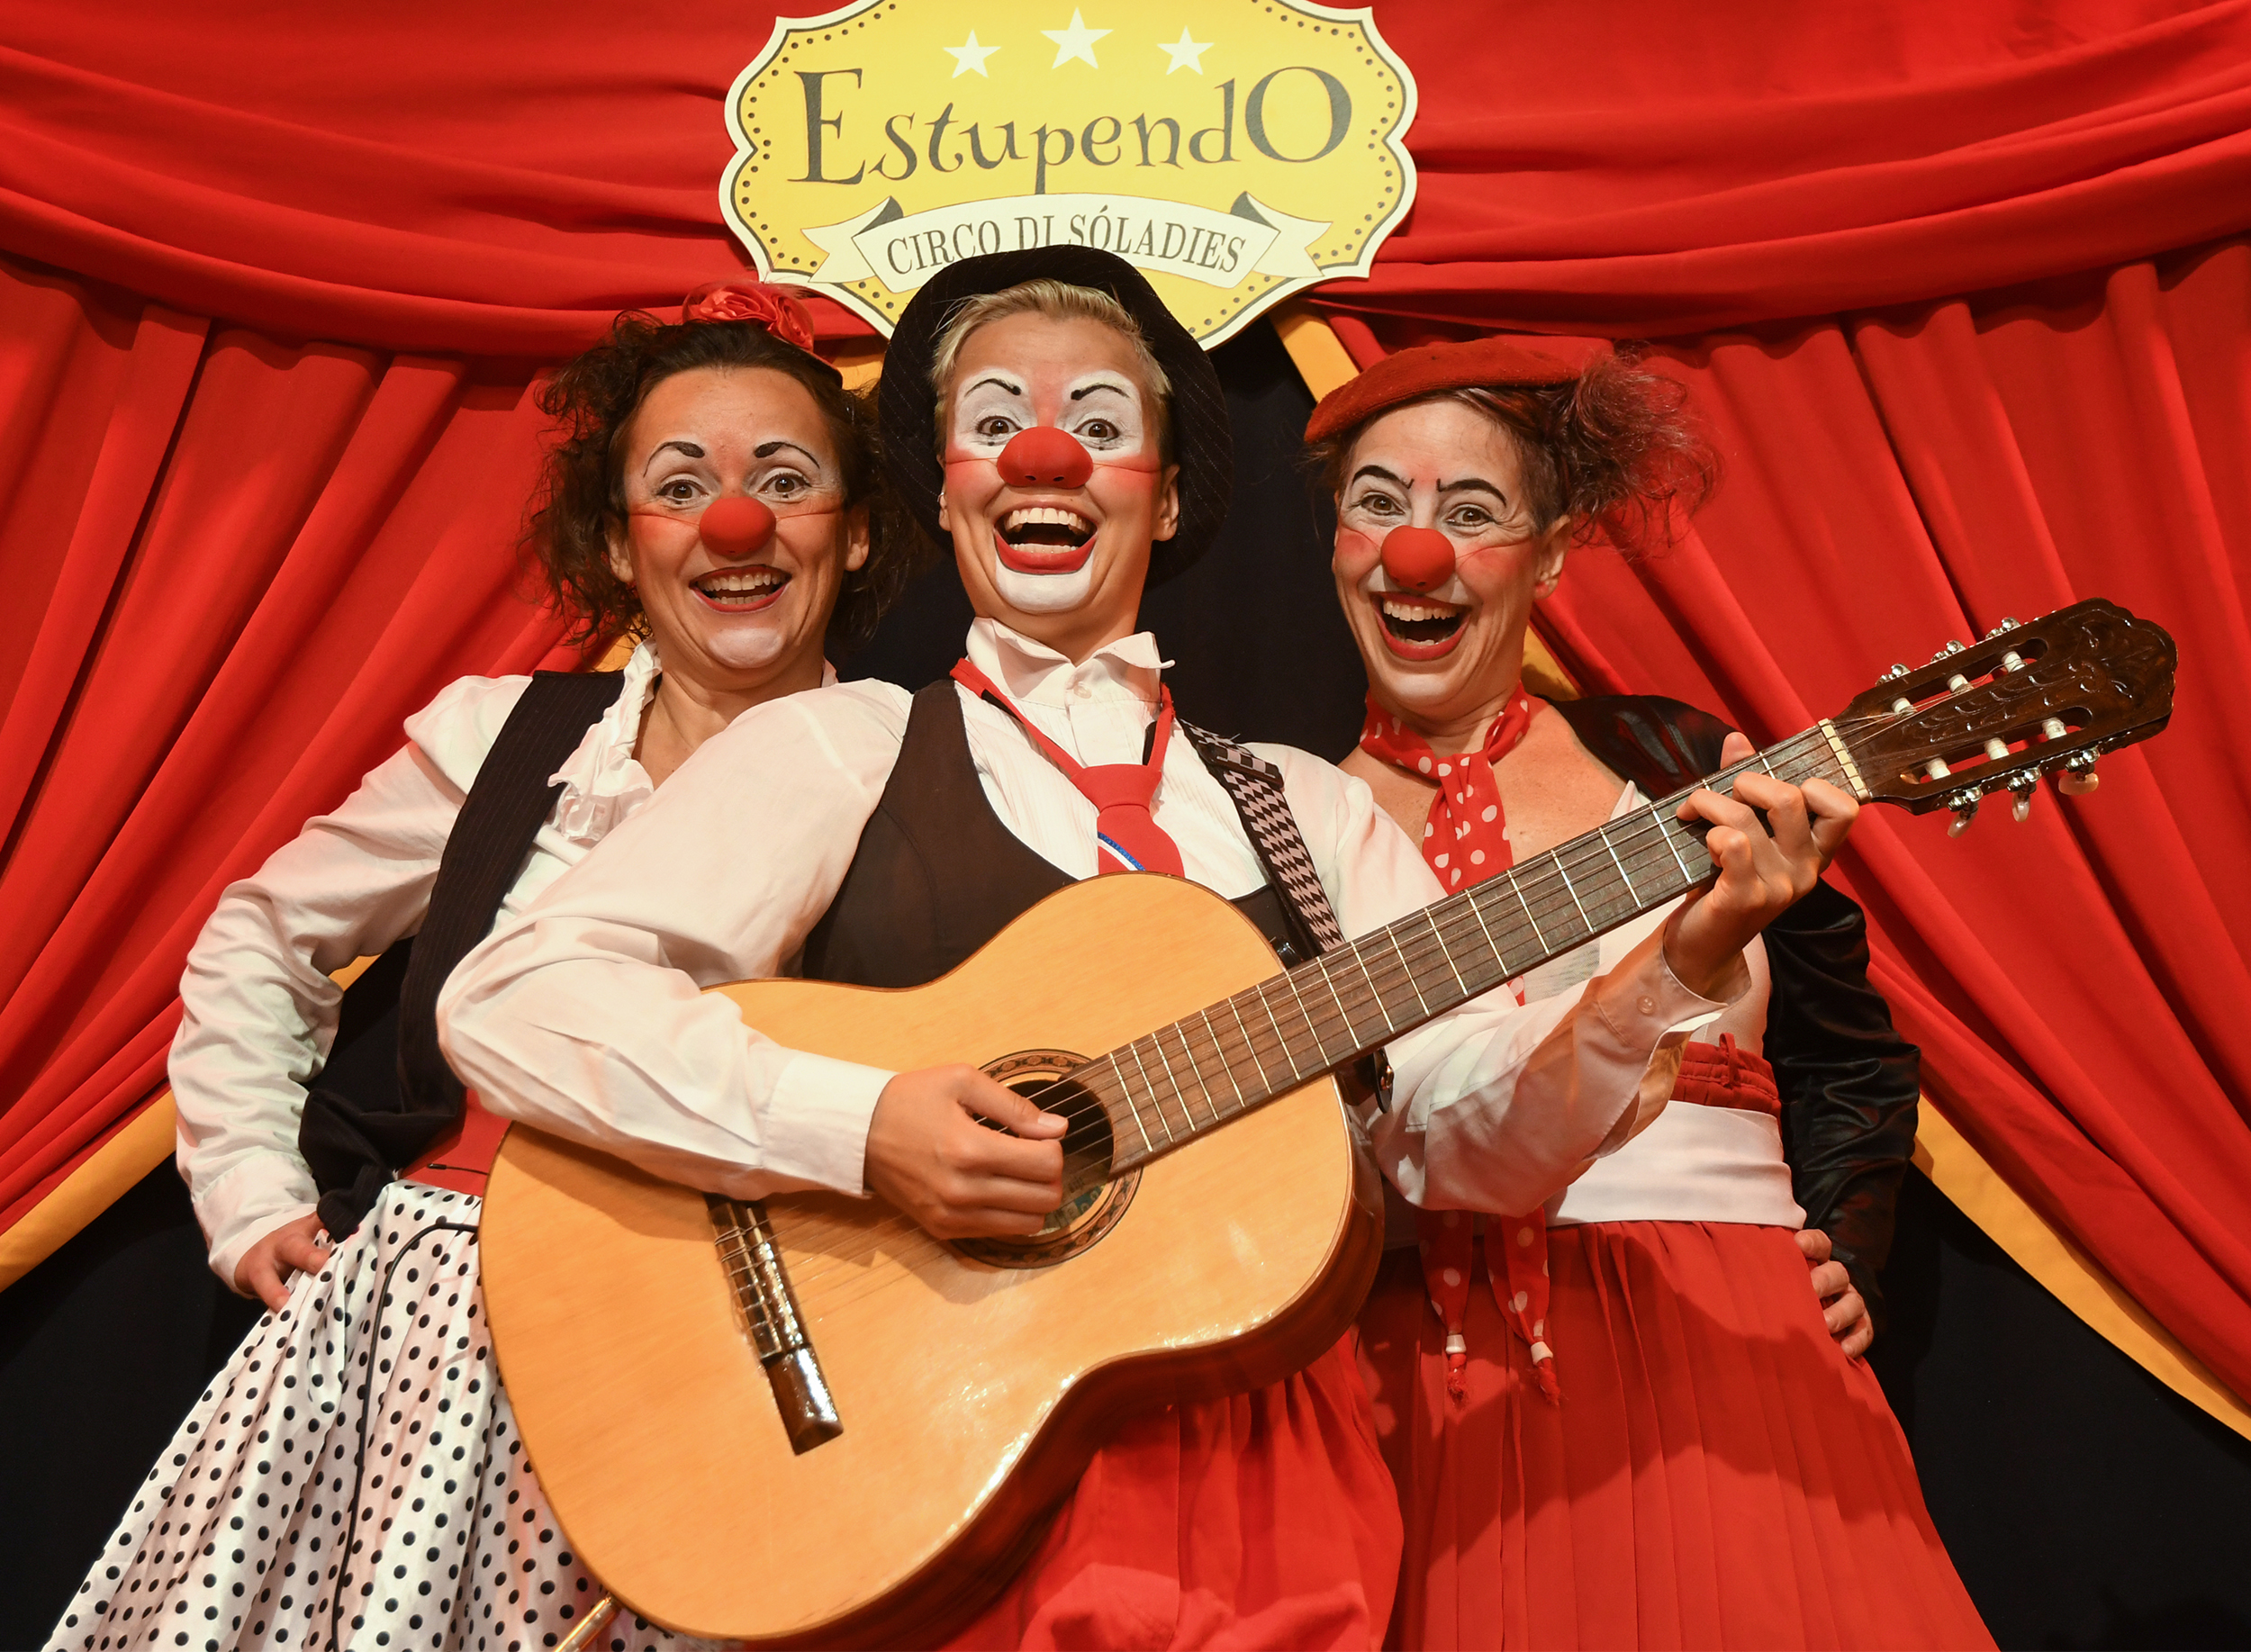 Crianças #EmCasaComSesc recebe o espetáculo “Estupendo Circo Di SóLadies”